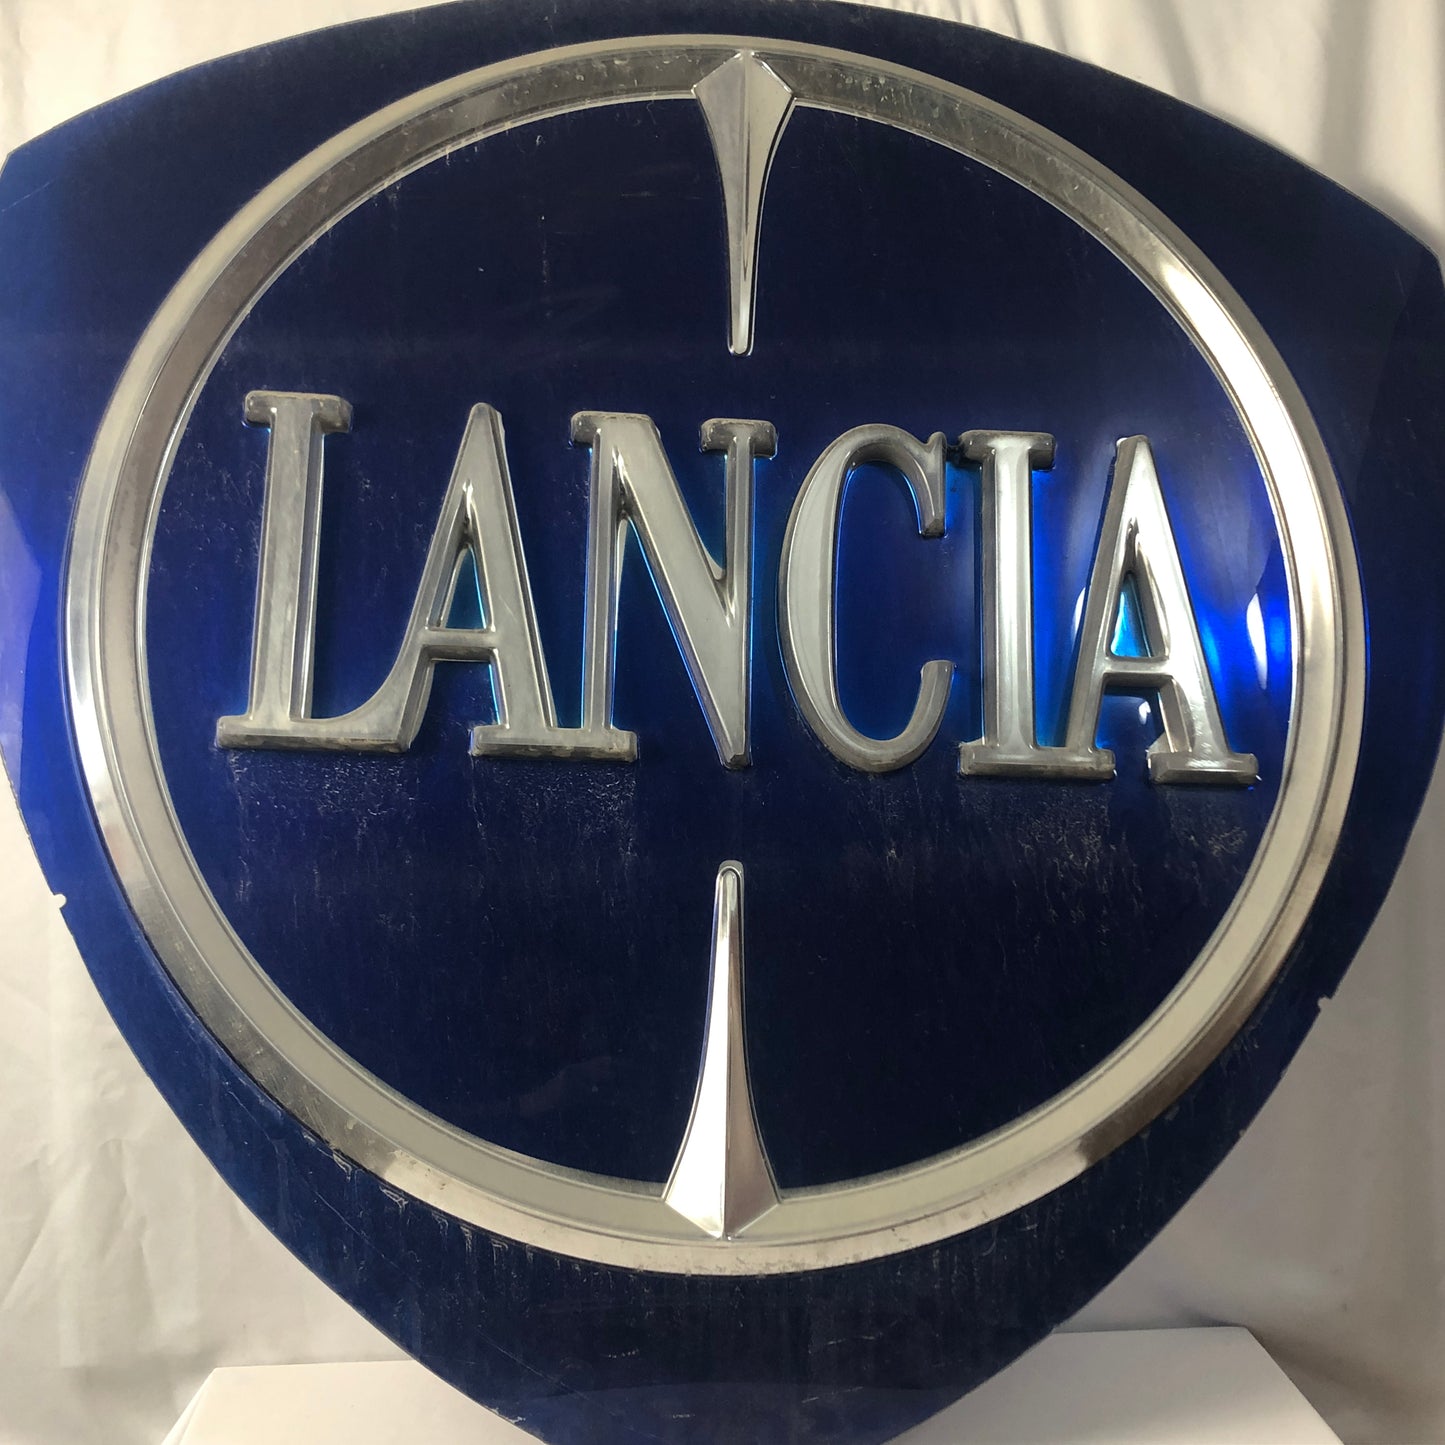 Lancia, Original Panel for Lancia Illuminated Sign Dimensions 103x100 cm